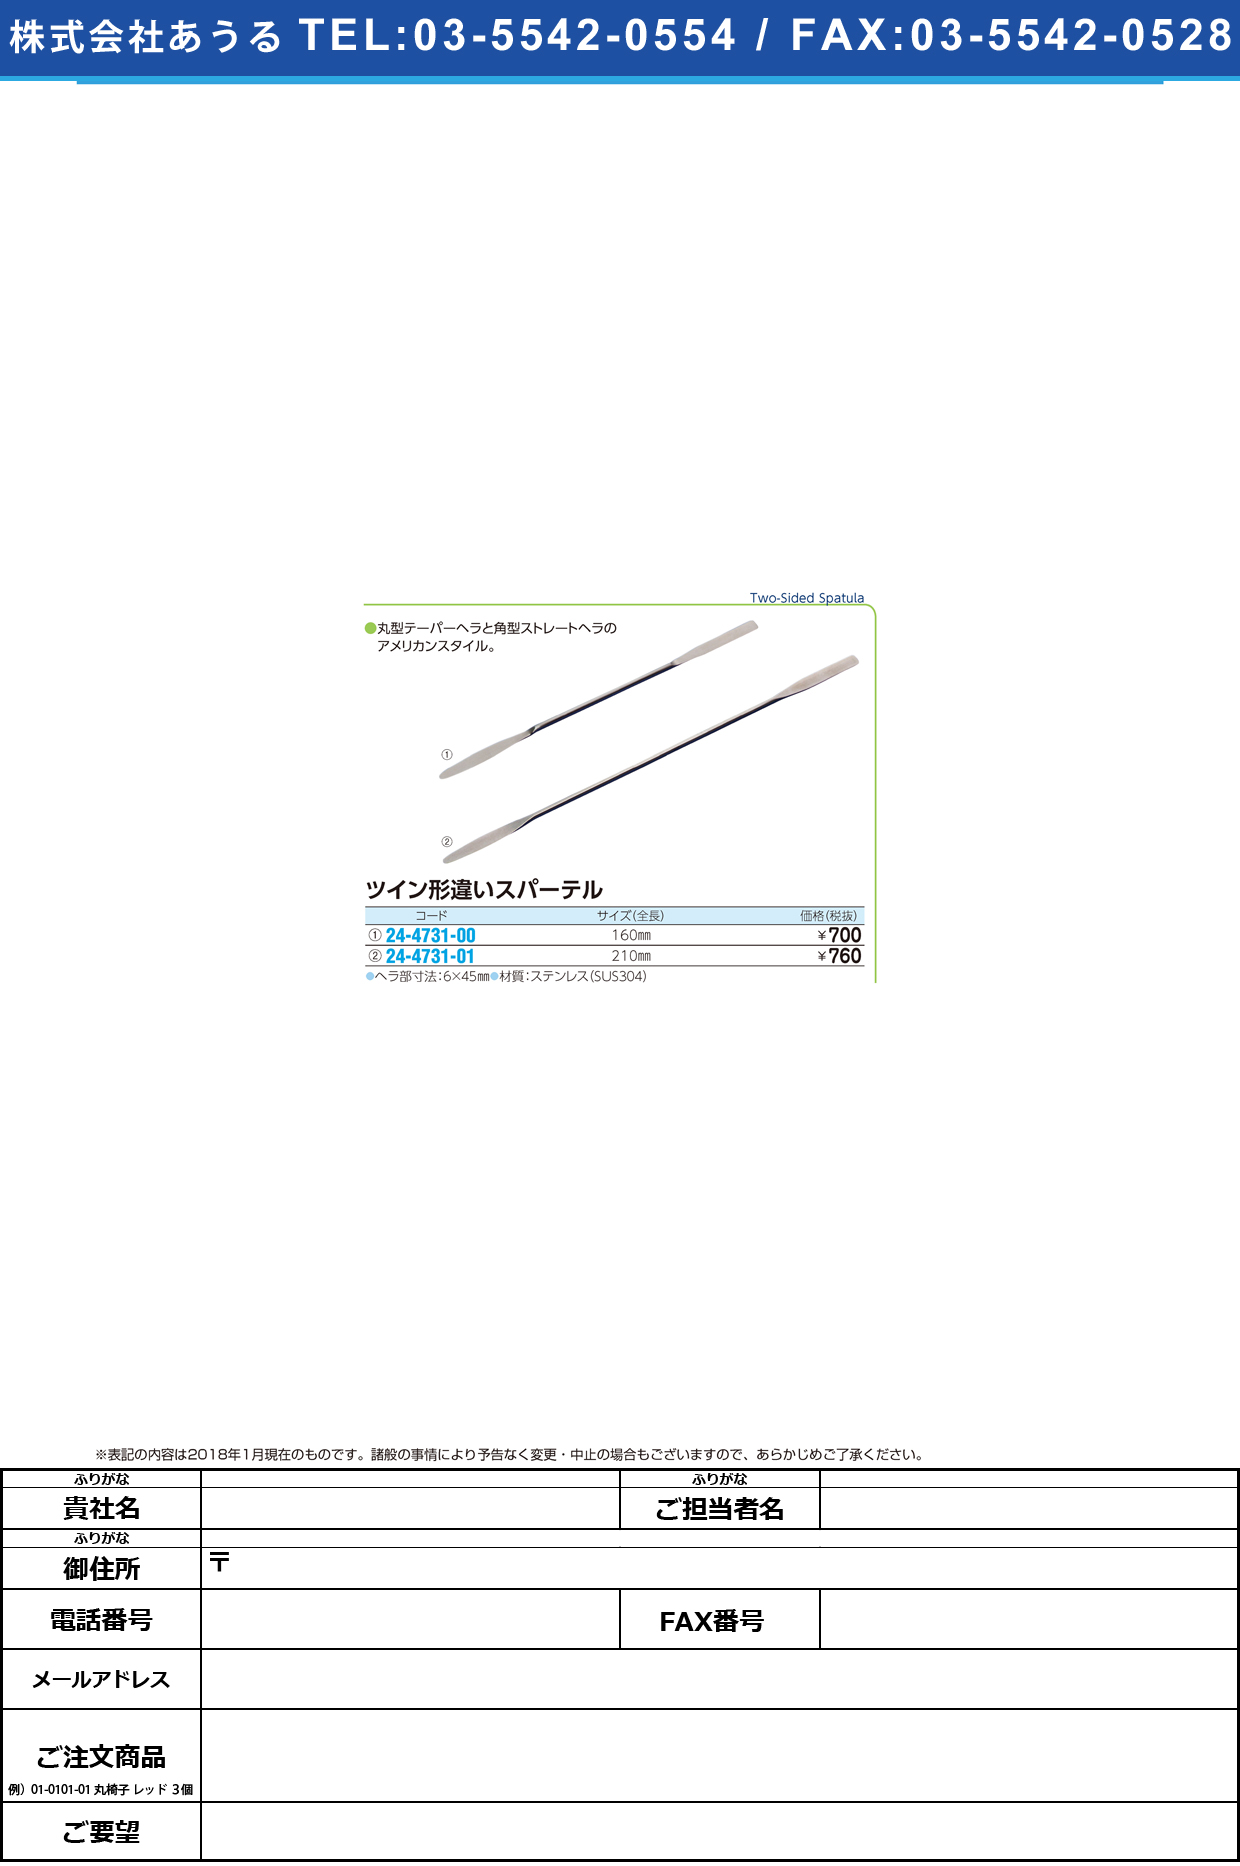 (24-4731-01)ツイン形違いスパーテル HSN41821(210MM) ﾂｲﾝｽﾊﾟｰﾃﾙ【1本単位】【2019年カタログ商品】